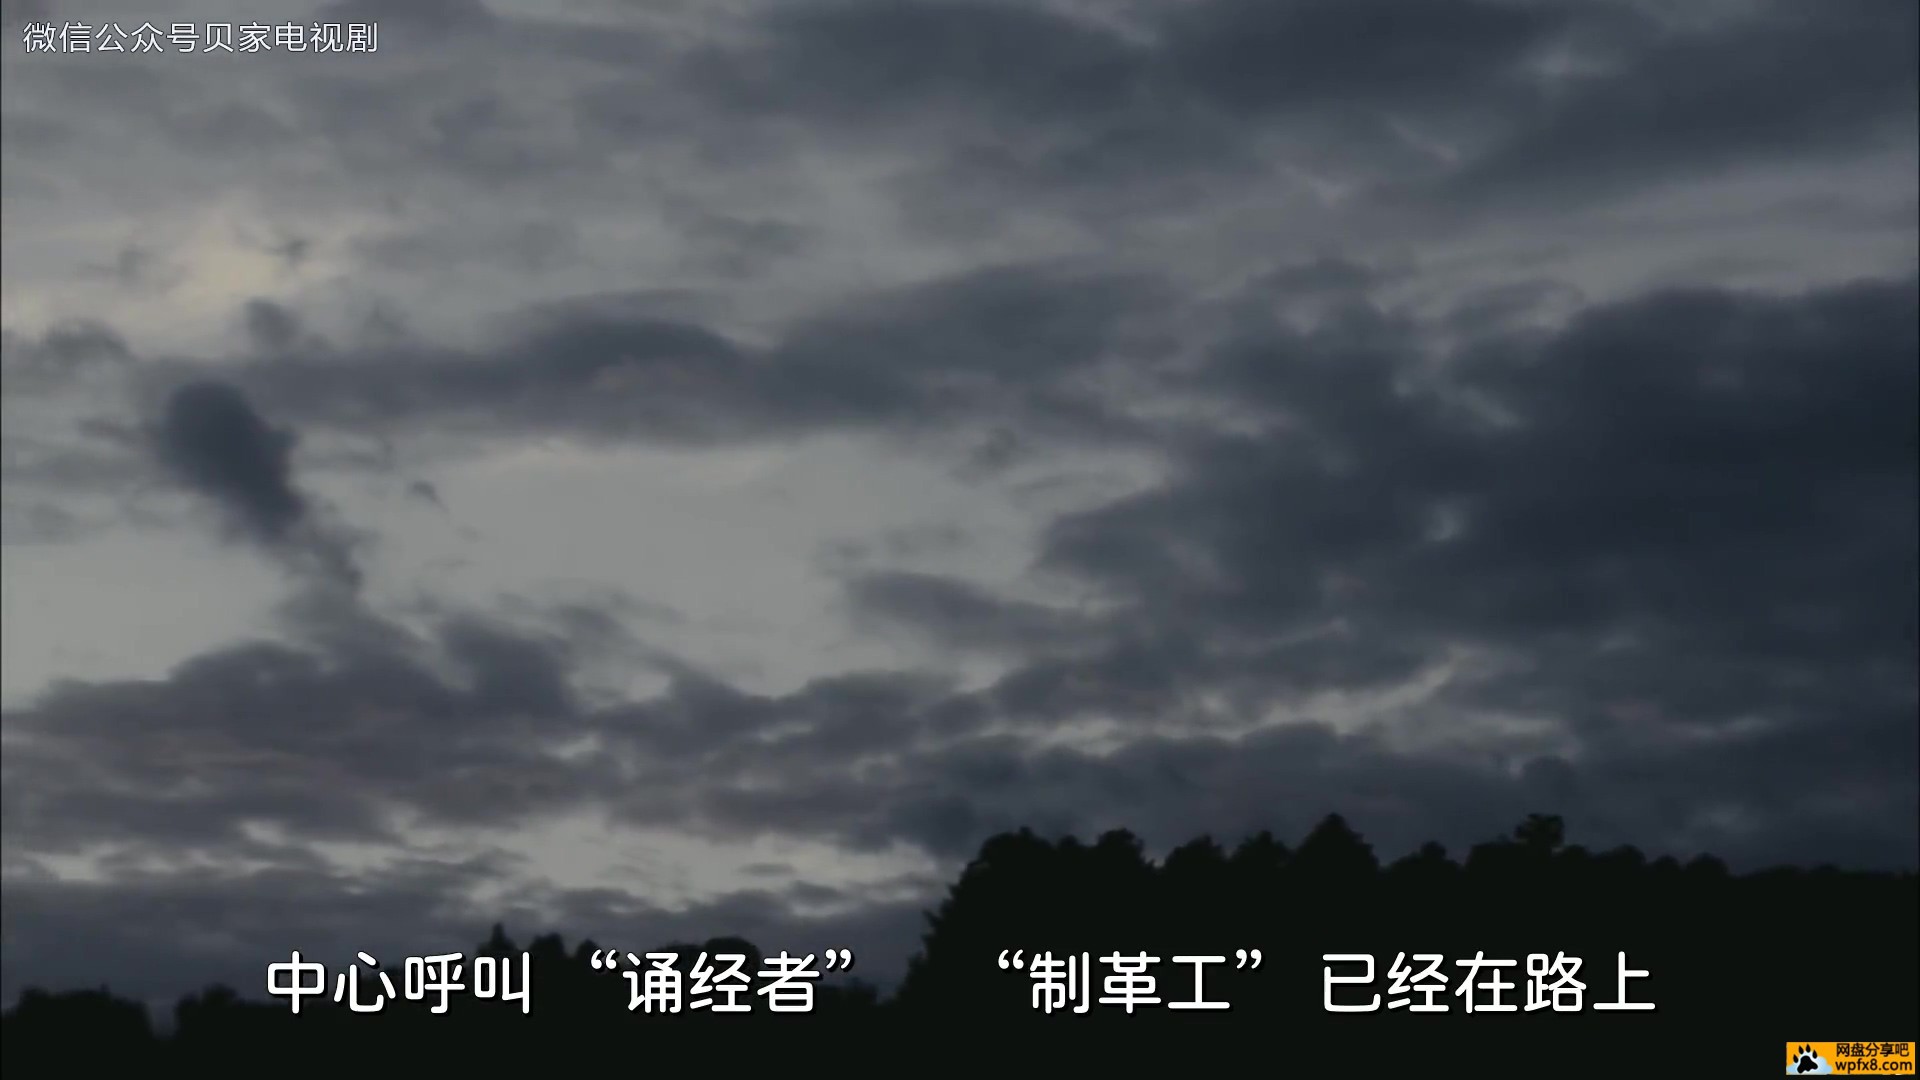 间谍必死-幻象-01-贝家电视剧字幕.mp4_20220220_205833.436.jpg